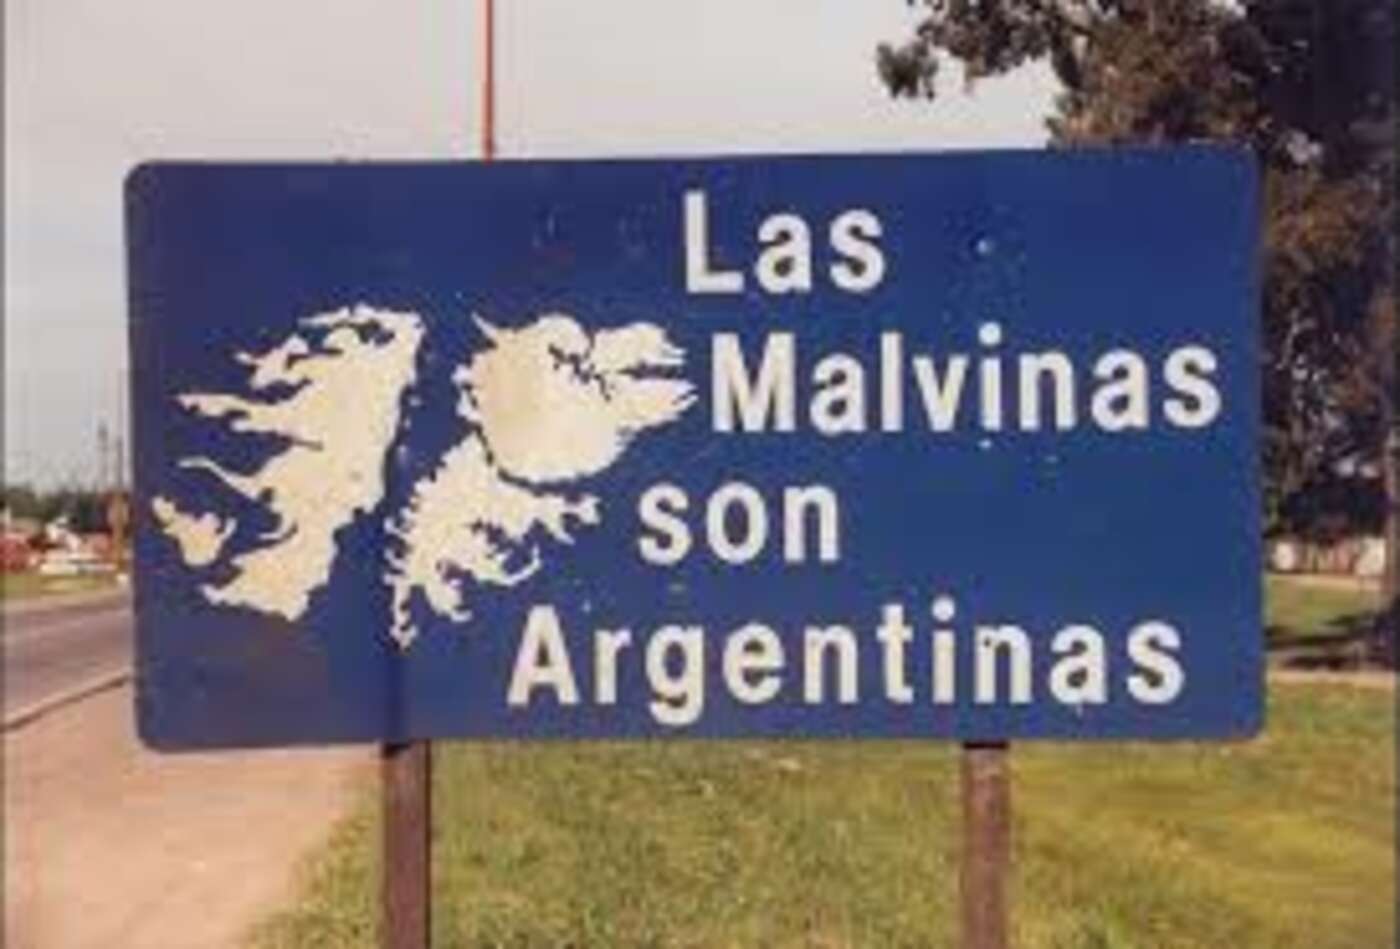 Schilder am Strassenrand in Argentinien